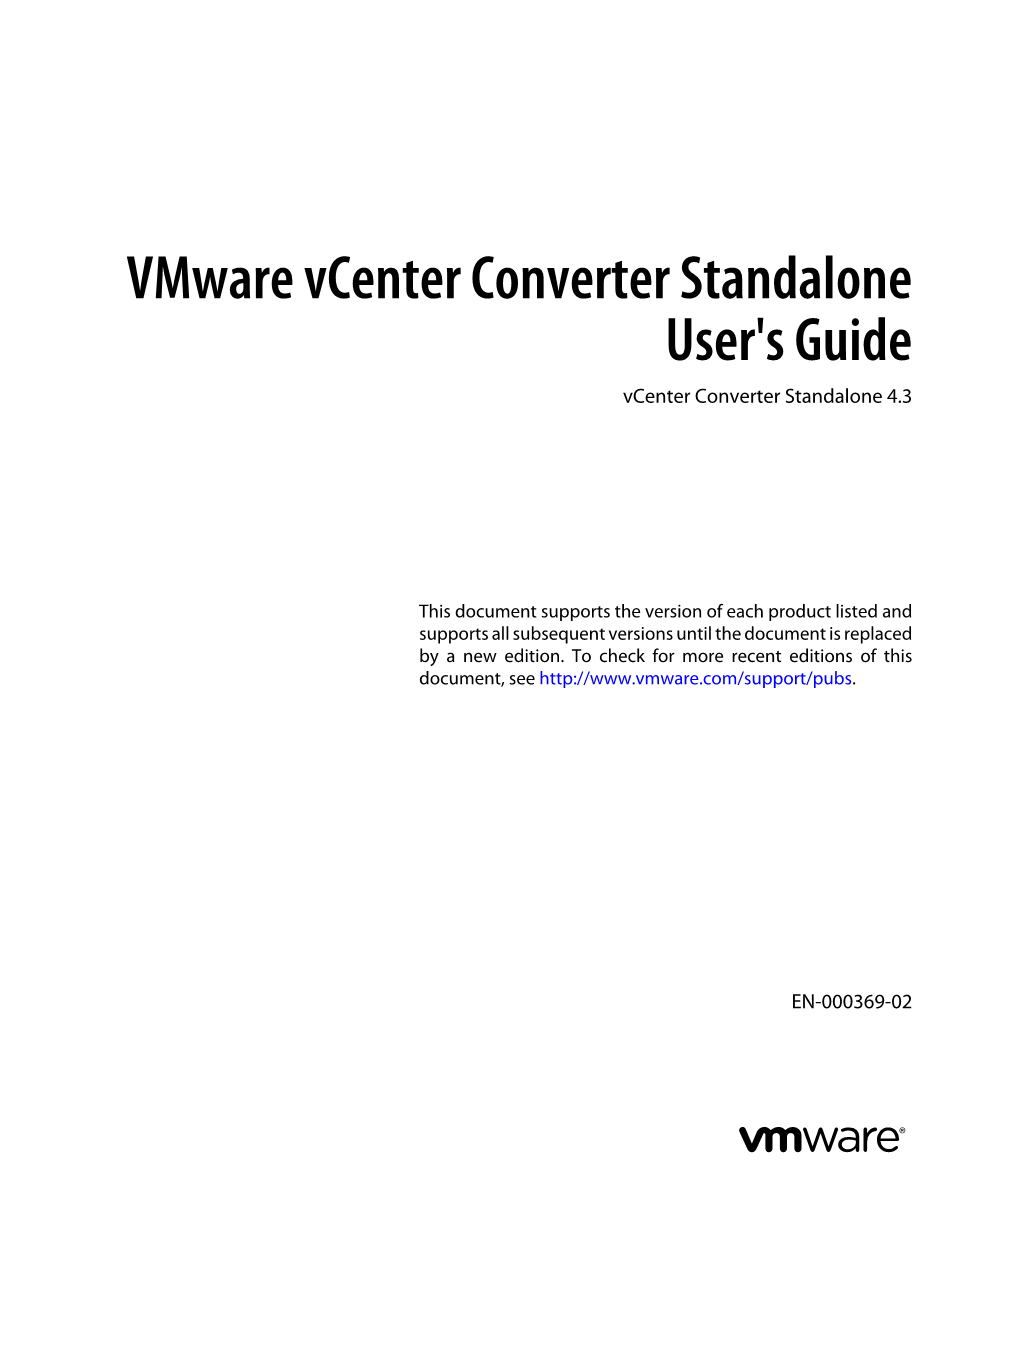 Vmware Vcenter Converter Standalone 4.3 User's Guide